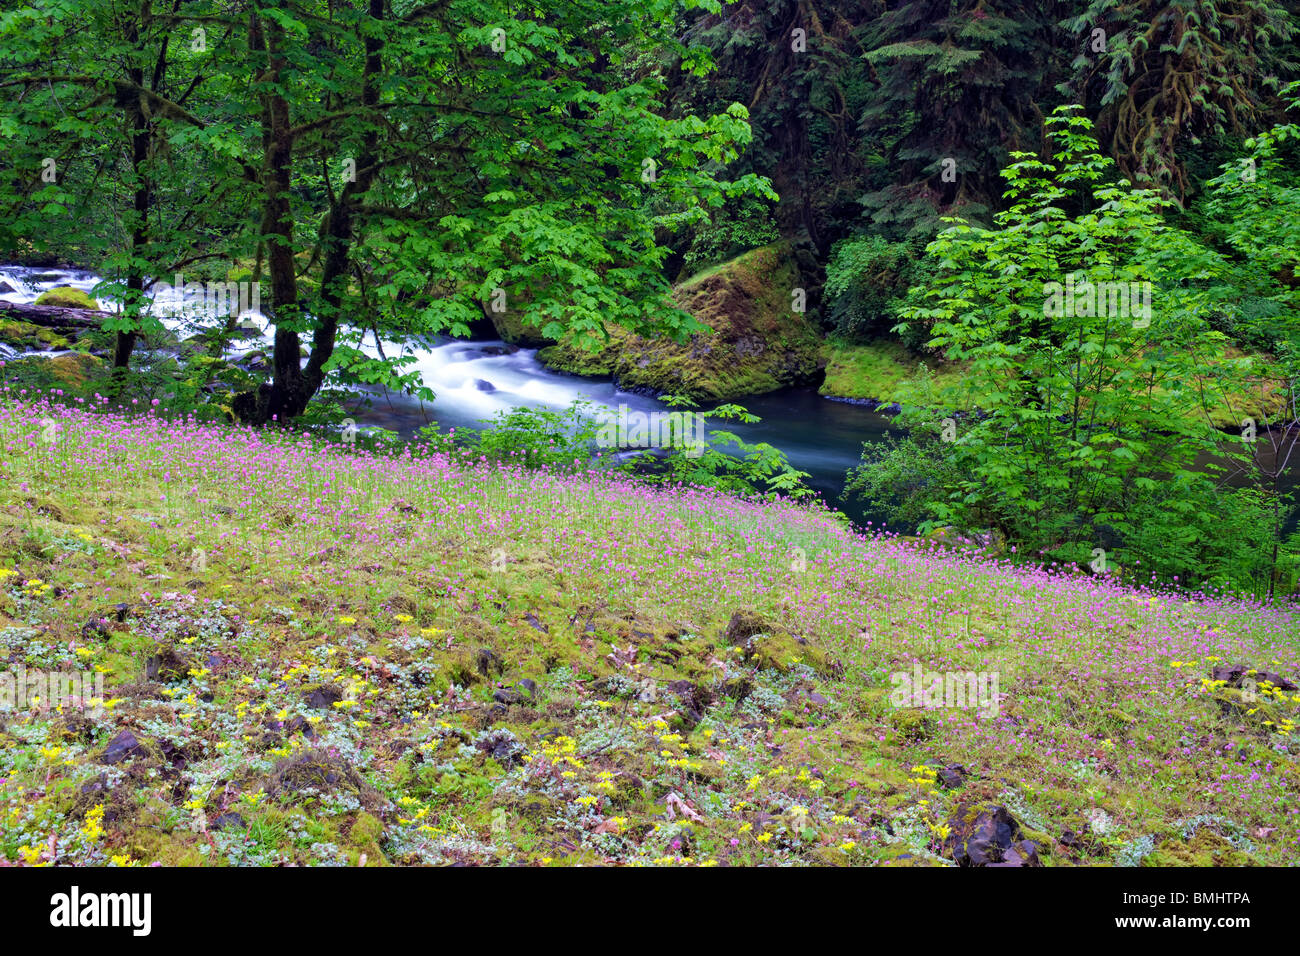 Gelbe Sedum und Rosy Plectritis blüht unter Moos bedeckt Steingarten mit Eagle Creek in Oregon die Columbia River Gorge. Stockfoto